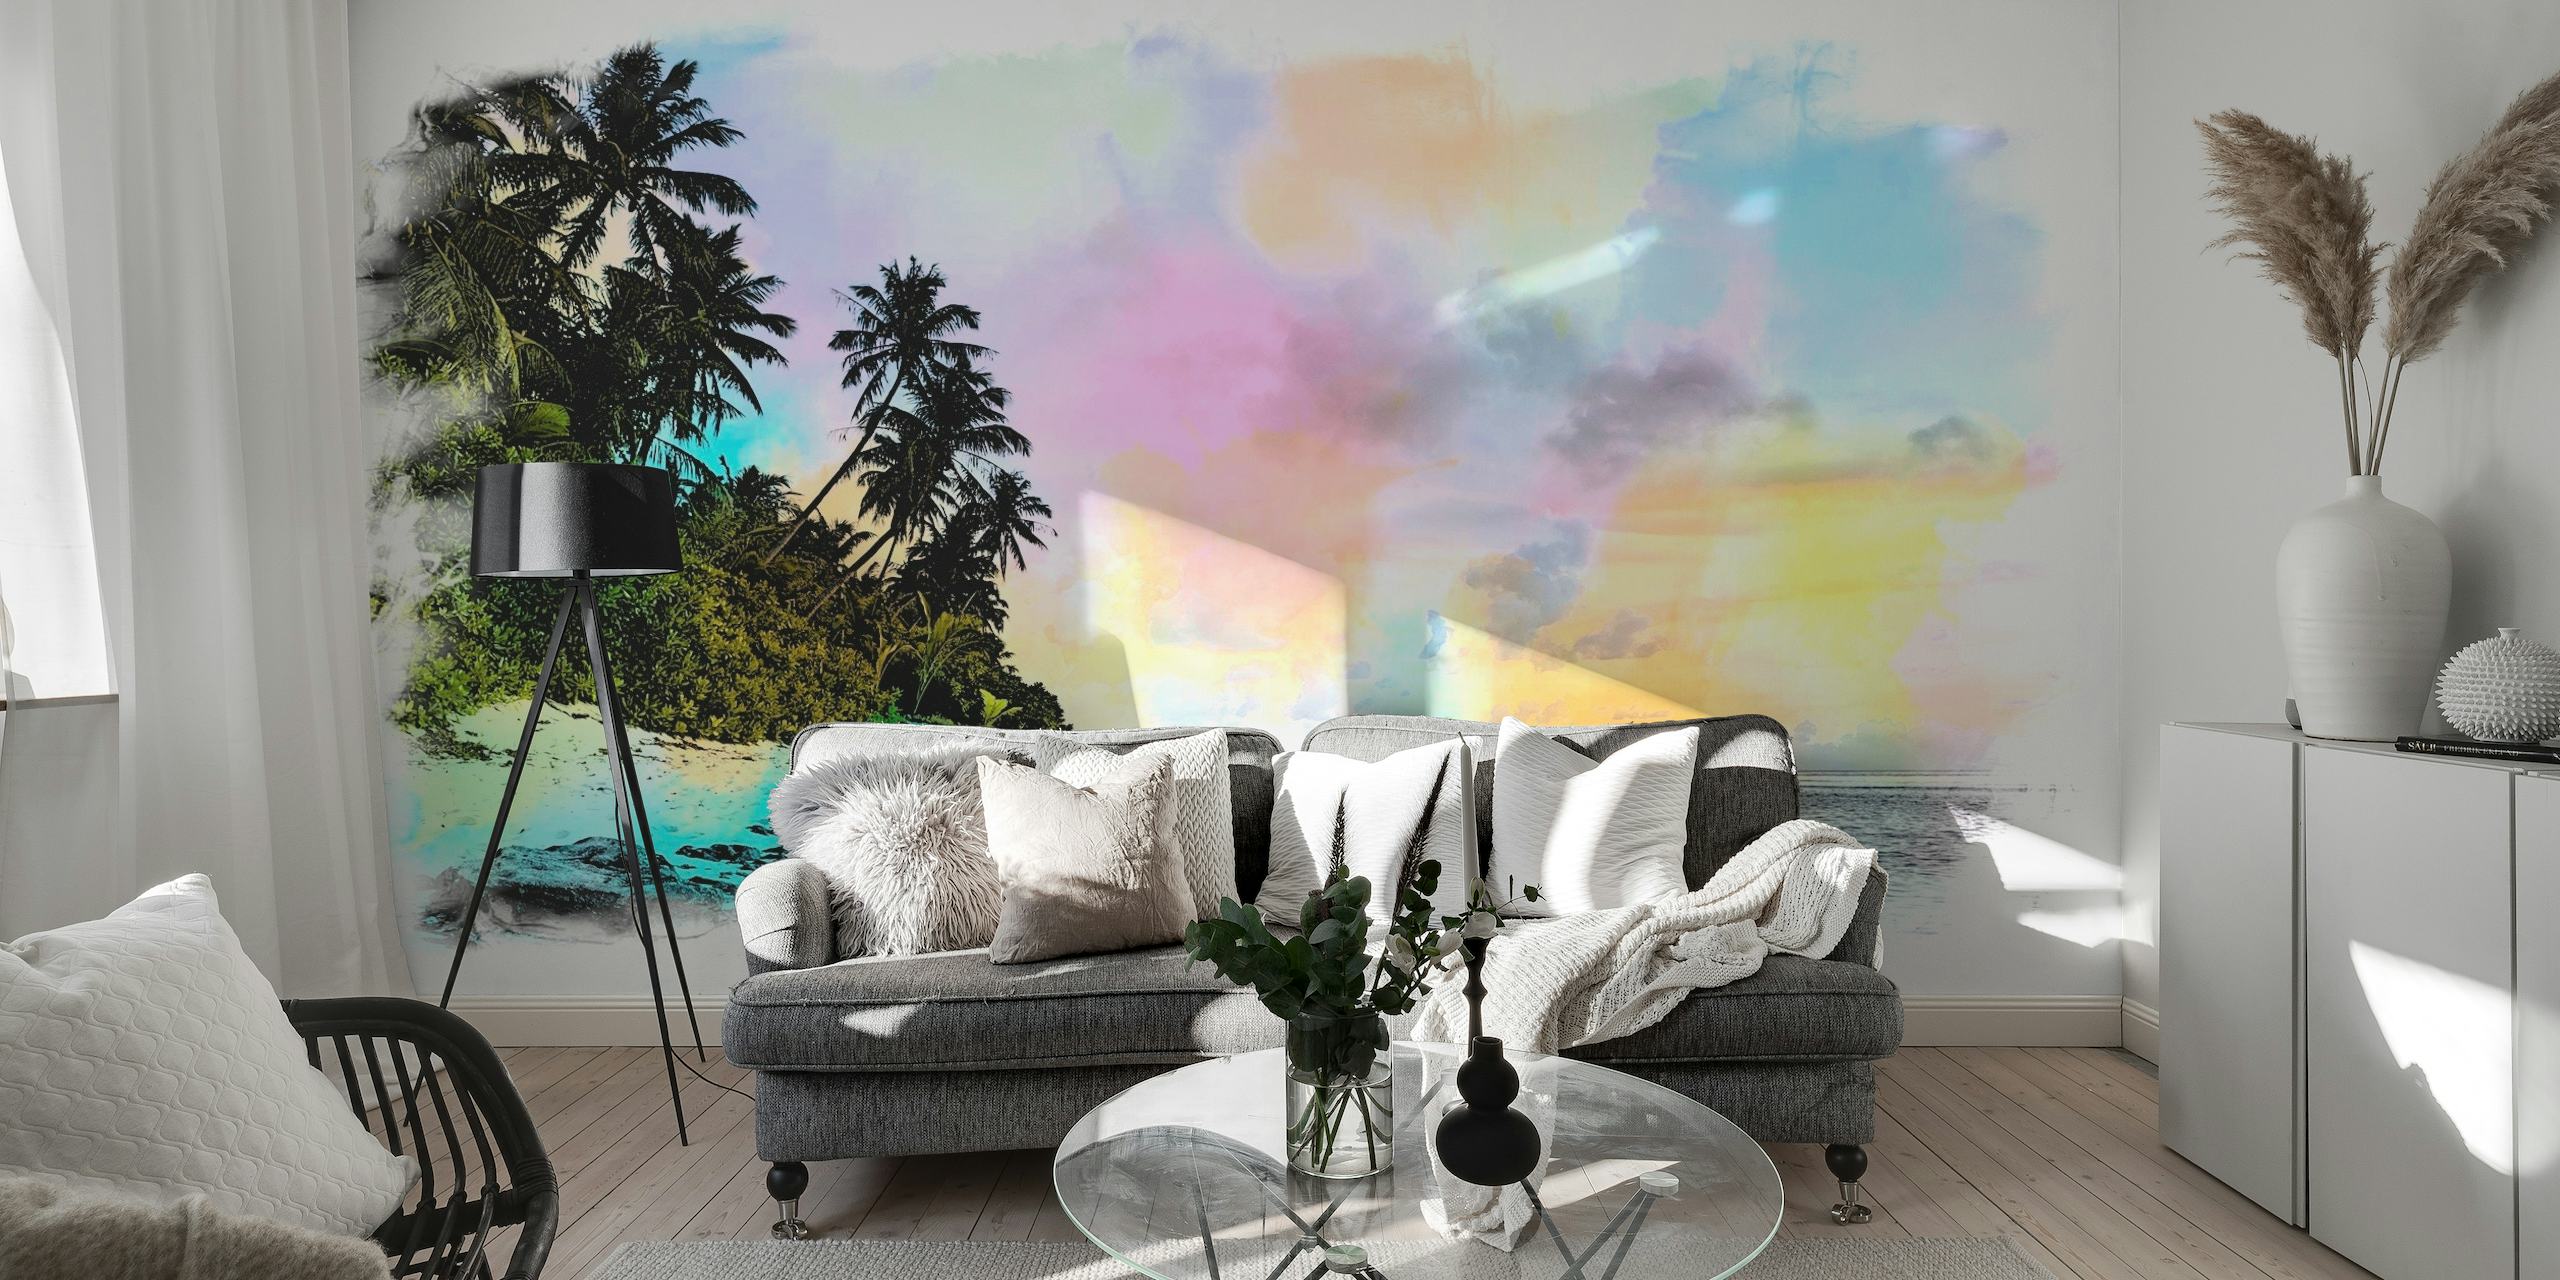 Rappresentazione artistica ad acquerello di una spiaggia estiva con palme e cieli color pastello